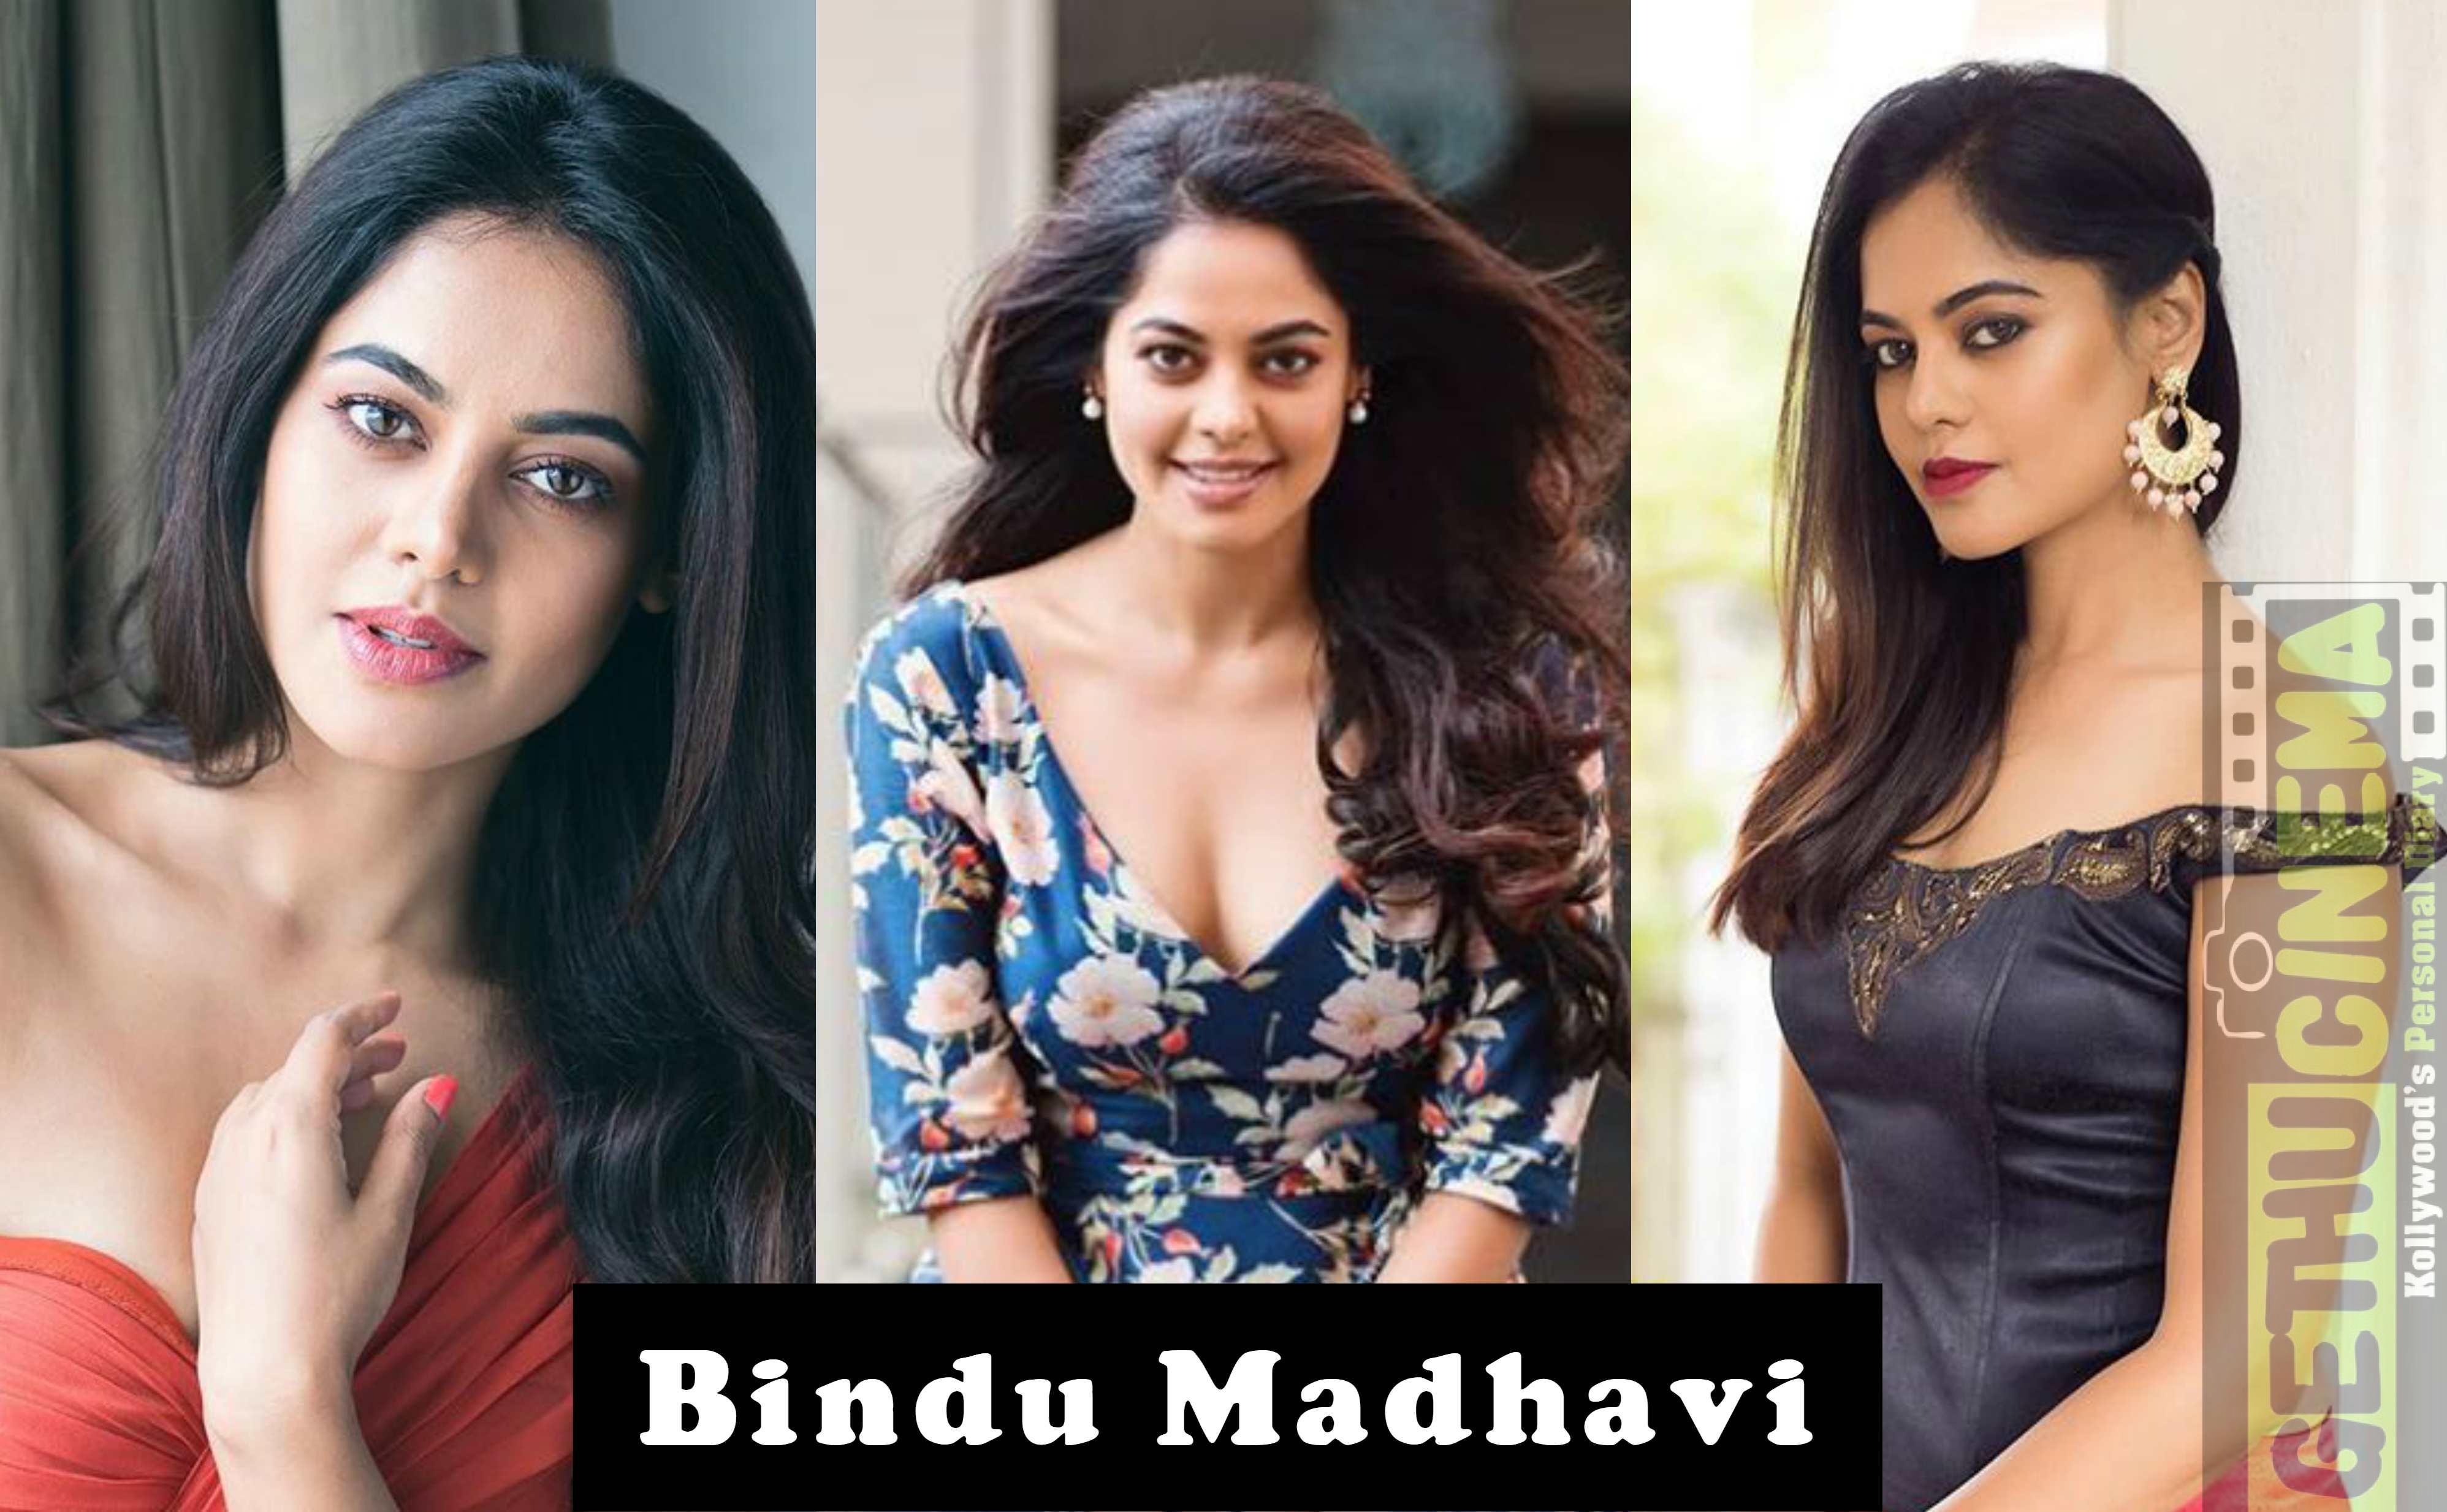 Actress Bindu Madhavi Photos Stills In Sexy Saree